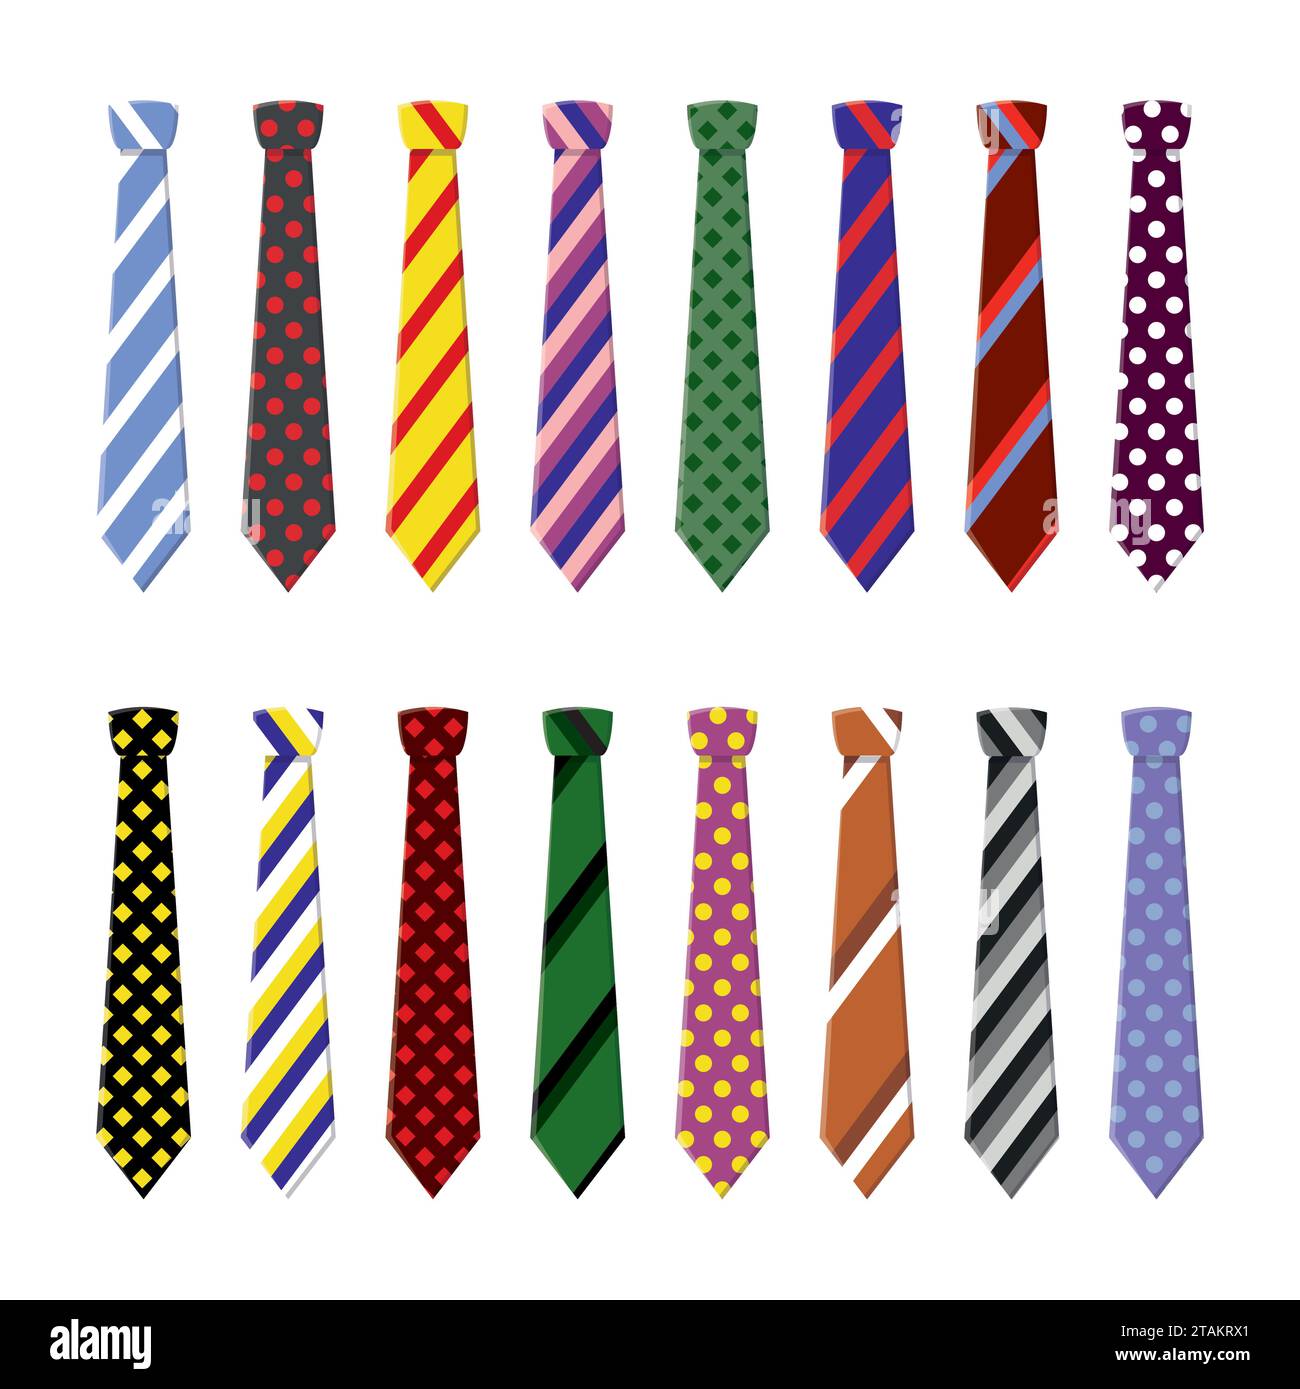 Krawatten für Geschäfts- und Freizeitkleidung. Binde in flachem Stil isoliert auf weißem Hintergrund. Stock Vektor